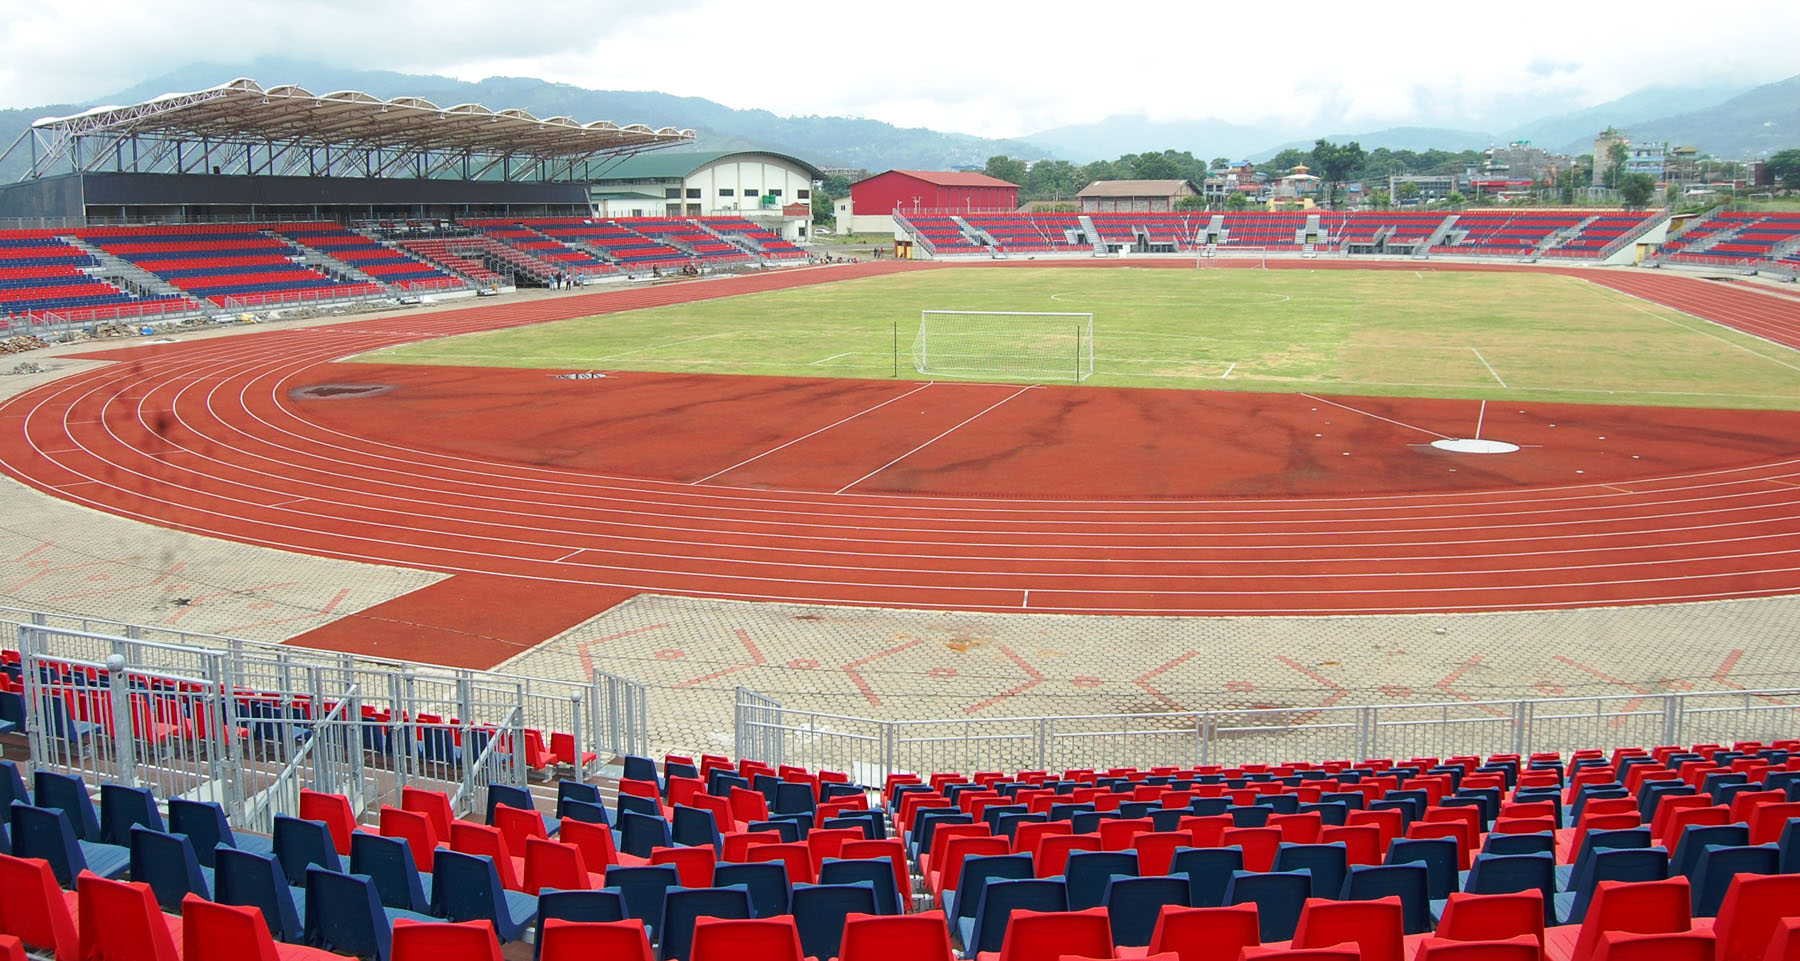 रंगिलो रंगशाला : पाेखरा अन्तर्राष्ट्रिय फुटबल स्टेडियम (तस्वीरमा)